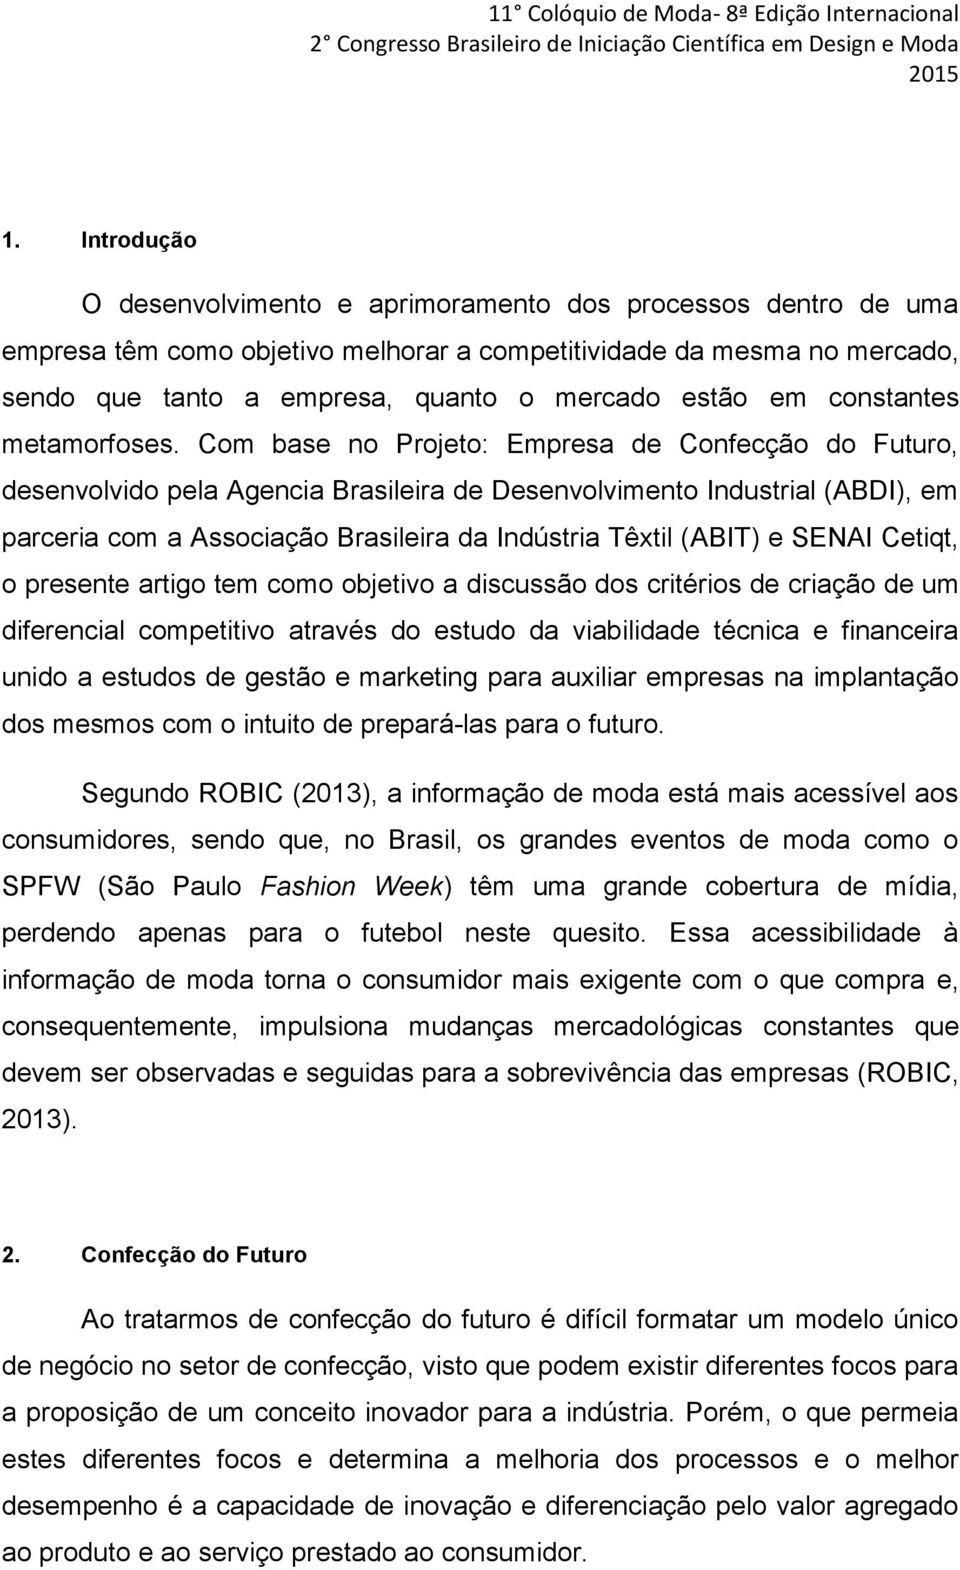 Com base no Projeto: Empresa de Confecção do Futuro, desenvolvido pela Agencia Brasileira de Desenvolvimento Industrial (ABDI), em parceria com a Associação Brasileira da Indústria Têxtil (ABIT) e